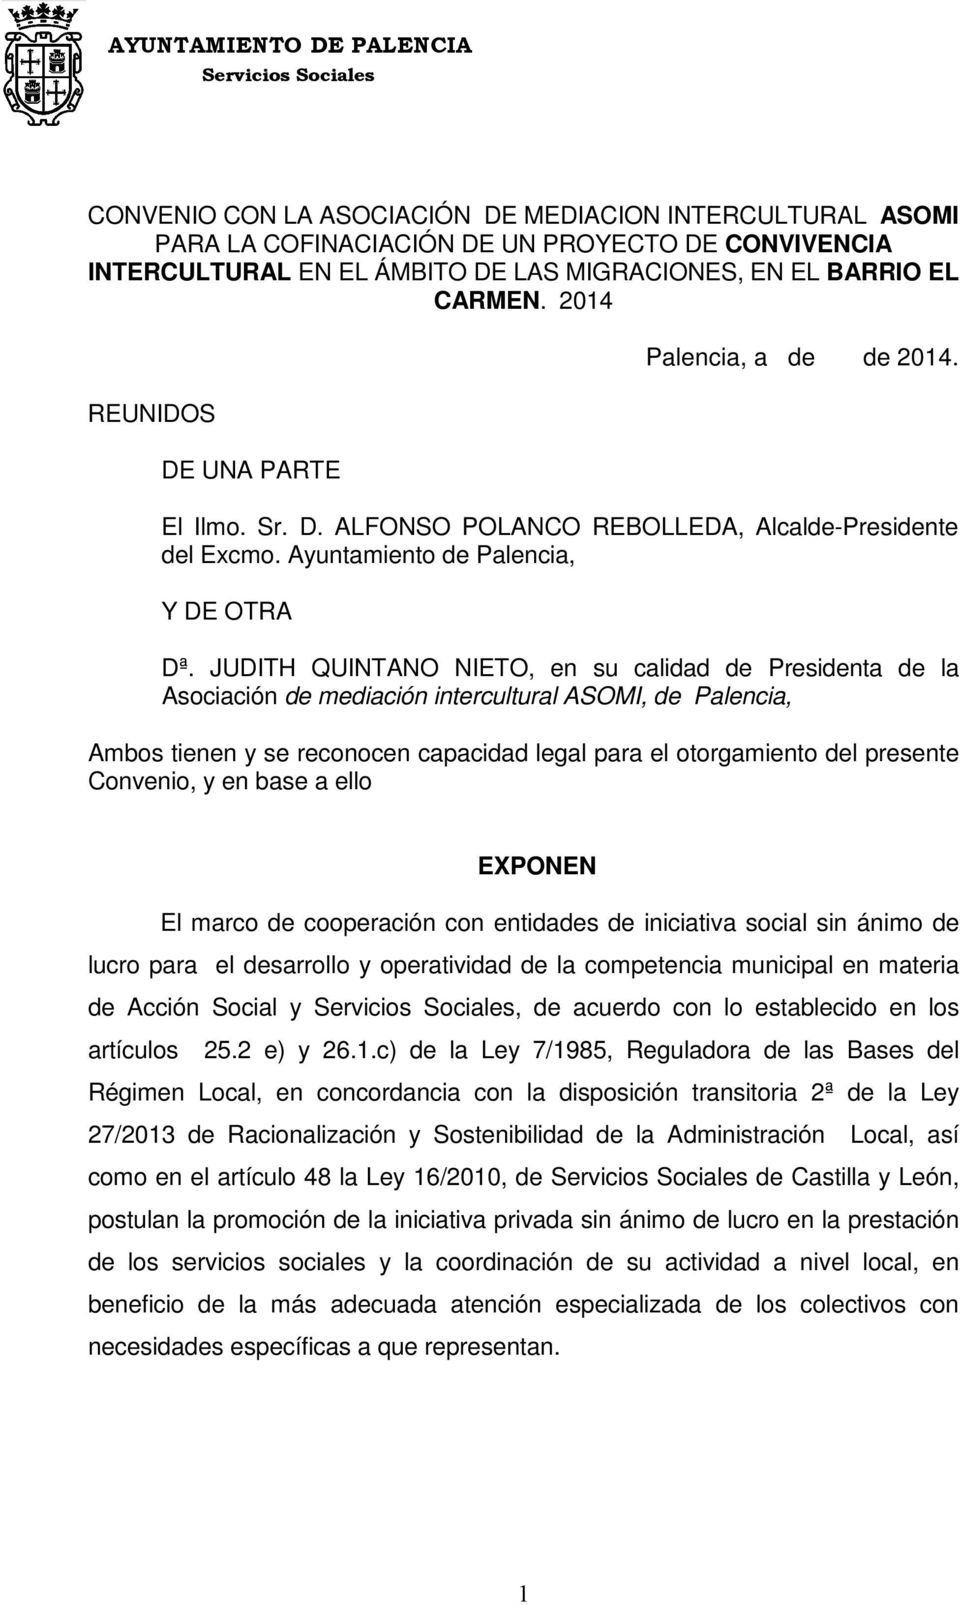 JUDITH QUINTANO NIETO, en su calidad de Presidenta de la Asociación de mediación intercultural ASOMI, de Palencia, Ambos tienen y se reconocen capacidad legal para el otorgamiento del presente